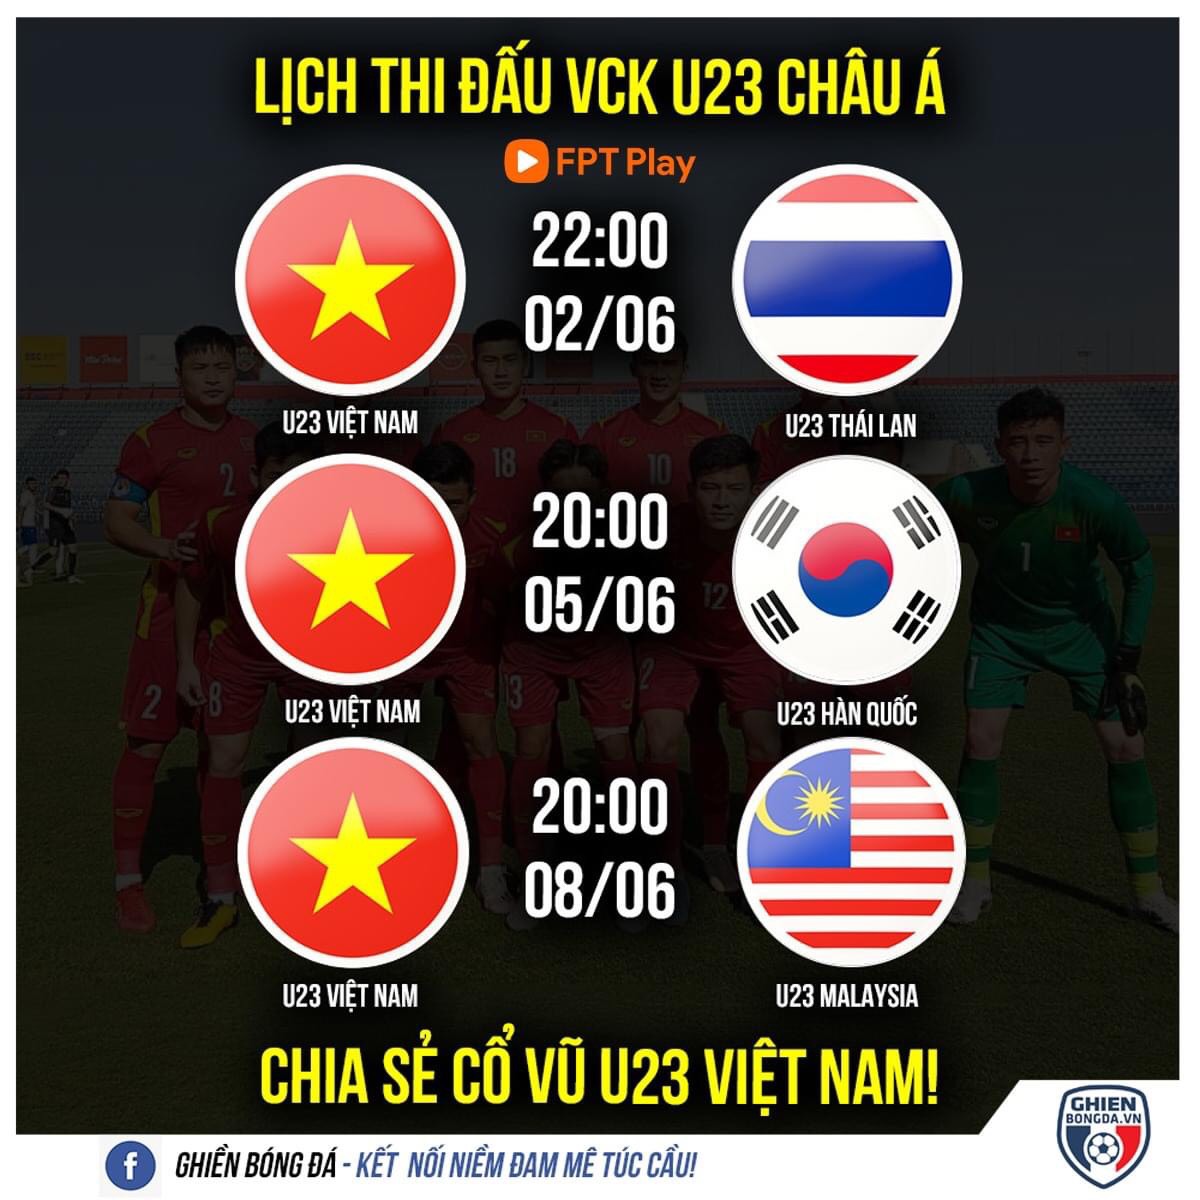 Lịch thi đấu VCK U23 châu Á 